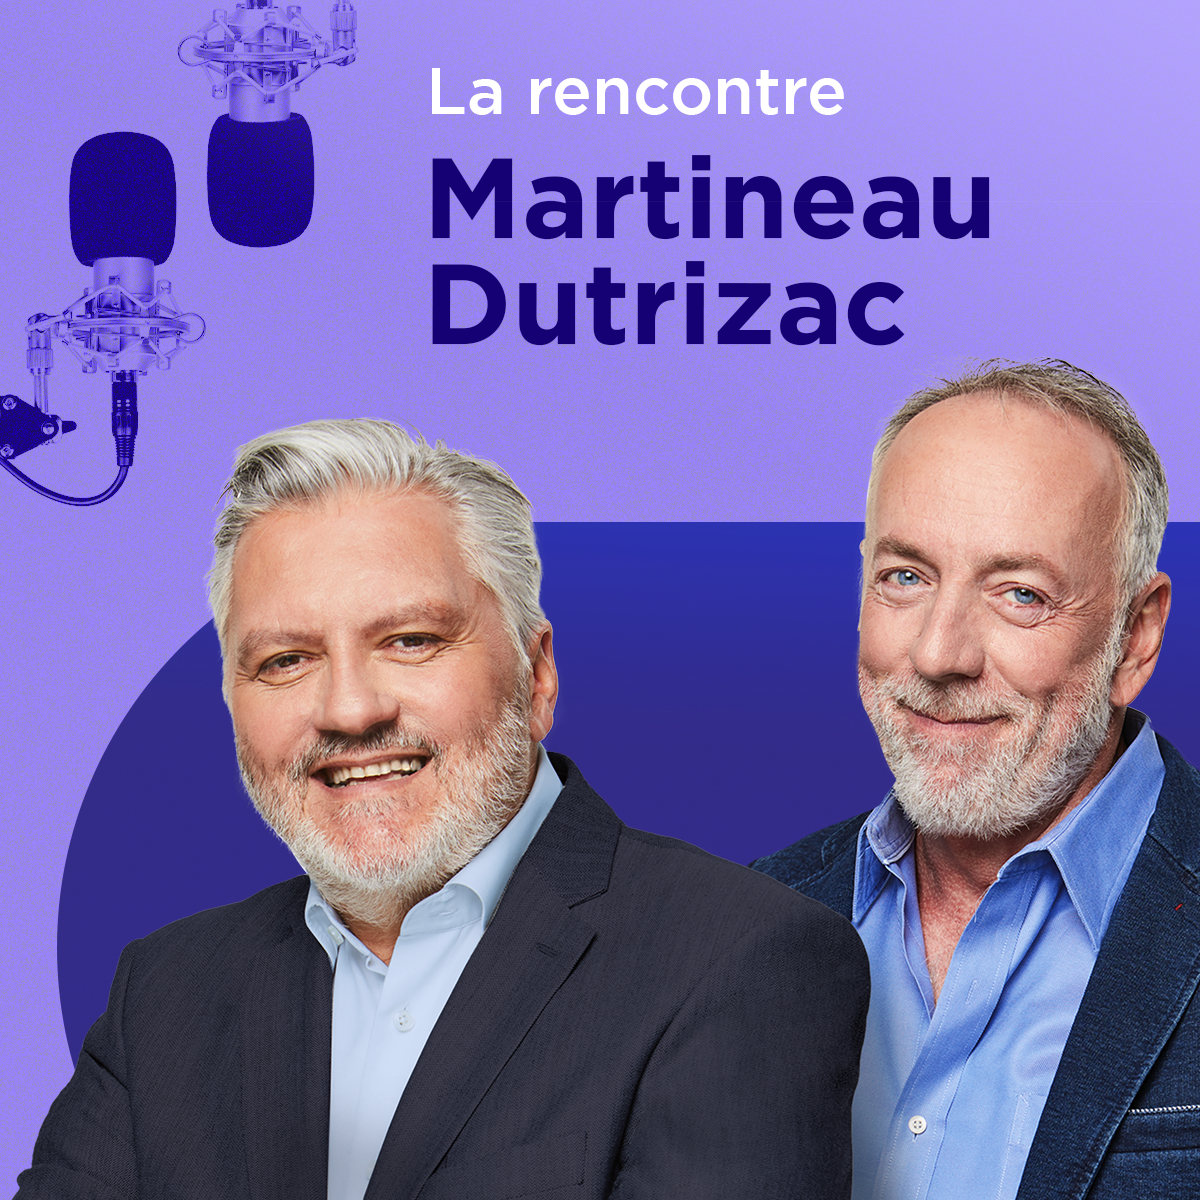 Martineau est inquiet pour les défenseurs de la liberté d'expression